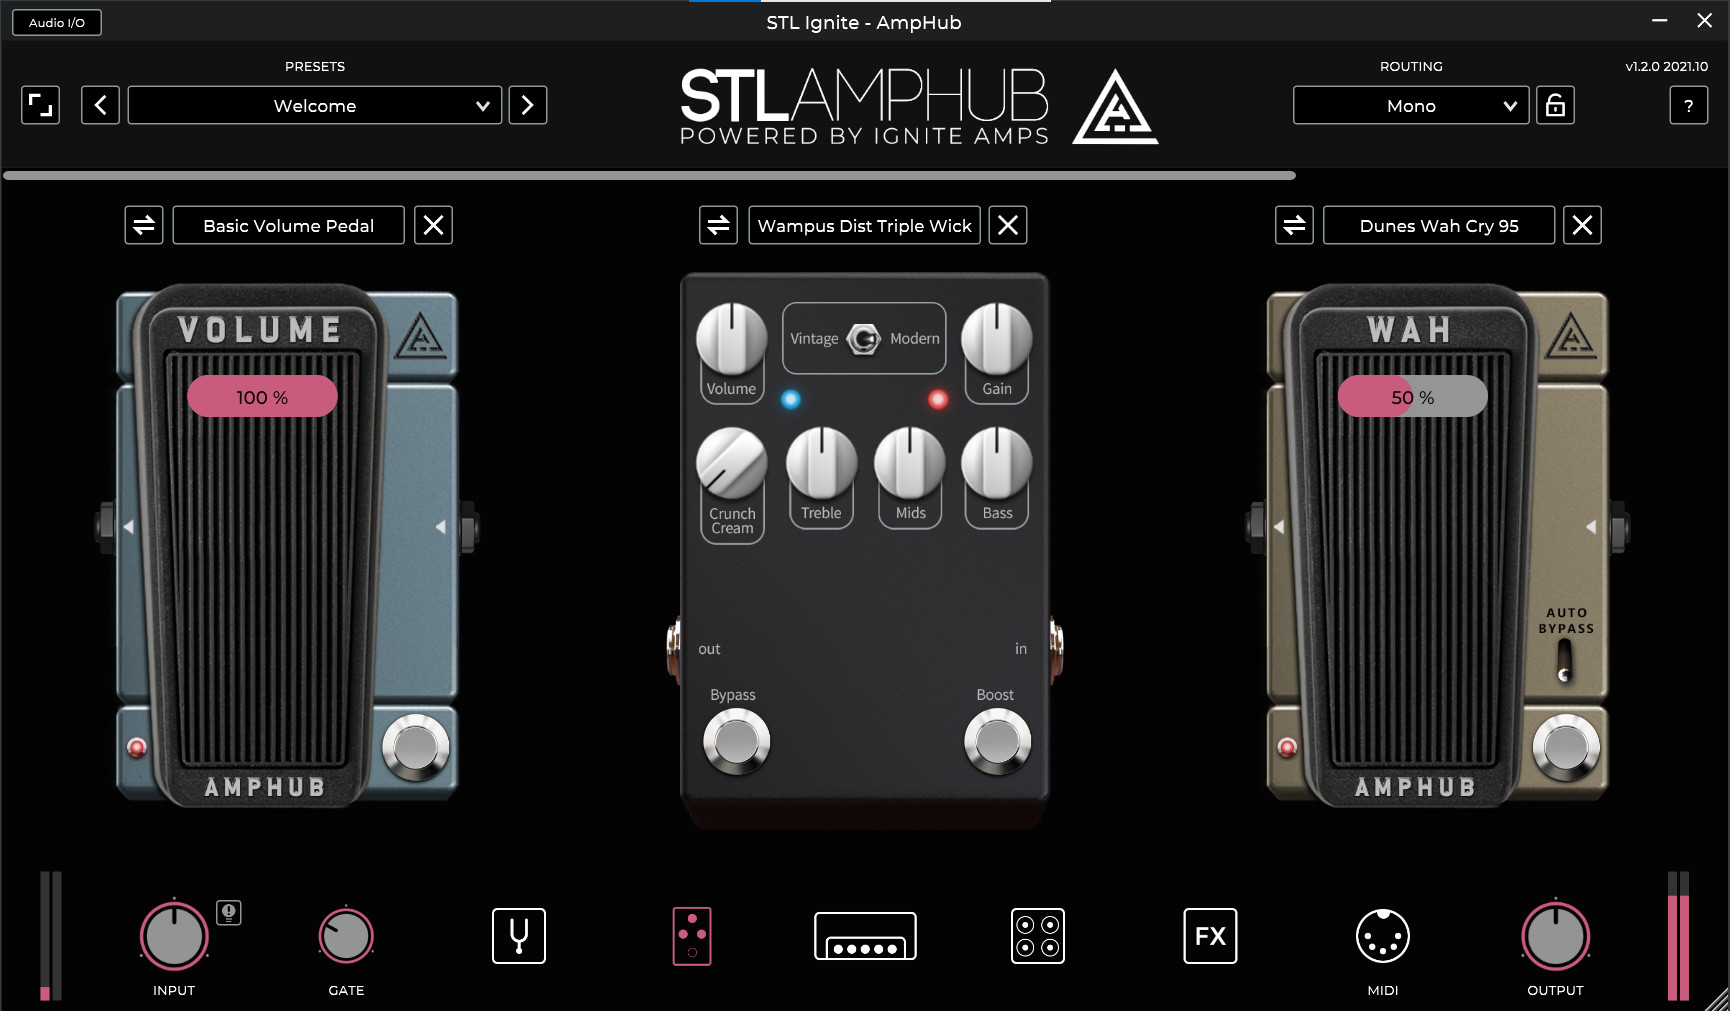 Stl tones. STL Ignite. STL Tones (STL TONEHUB, STL tonality). STL TONEHUB & AMPHUB. Ignite amps.